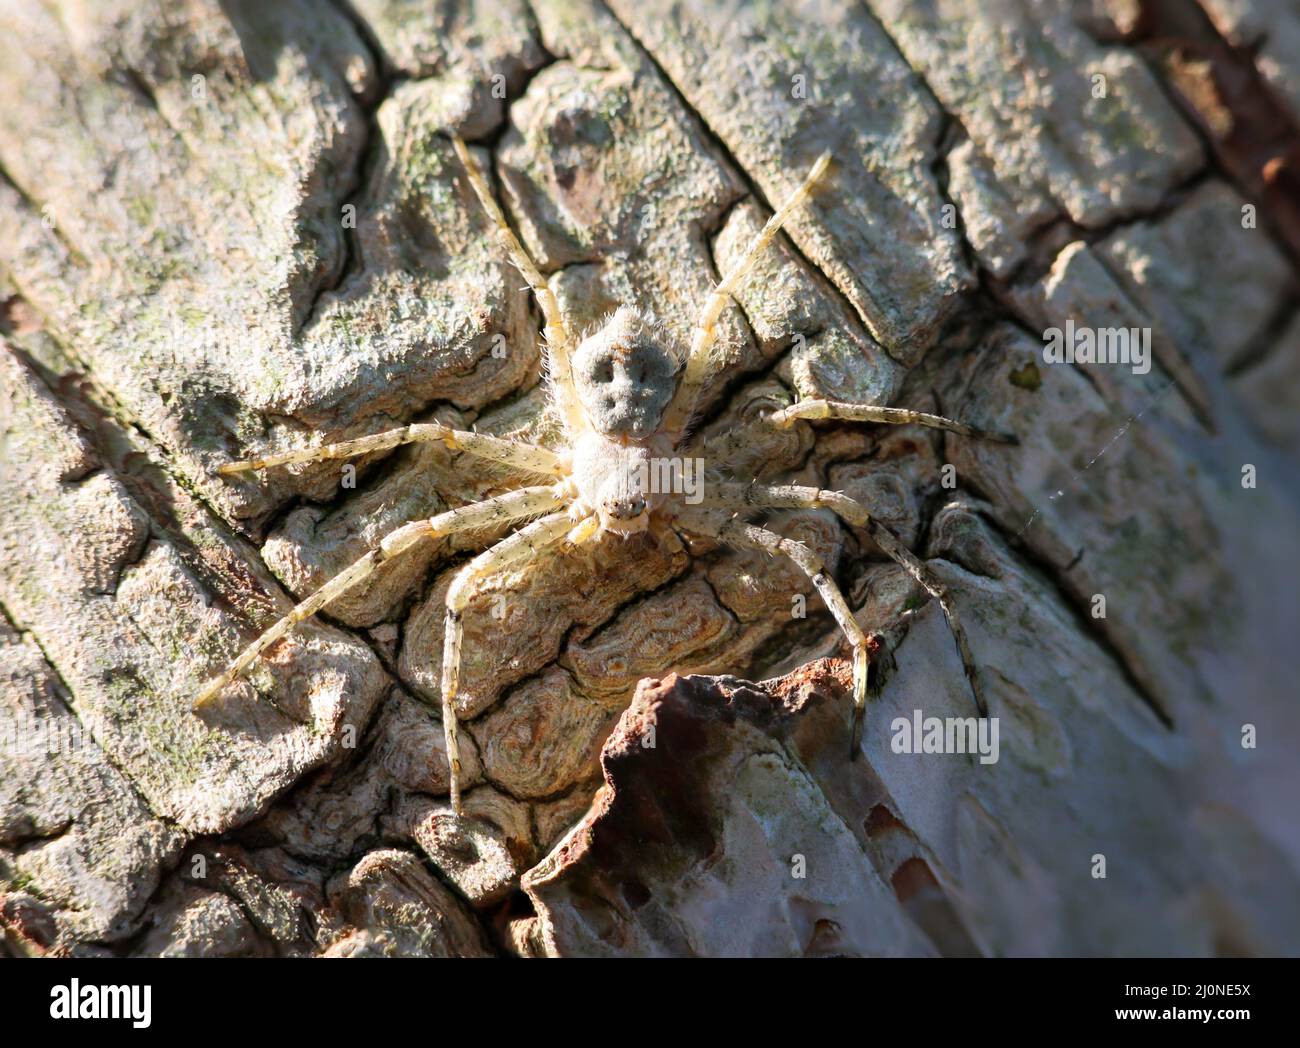 Une araignée bien camouflée sur l'écorce d'un bouleau. Ressemble à une araignée de crabe. Banque D'Images